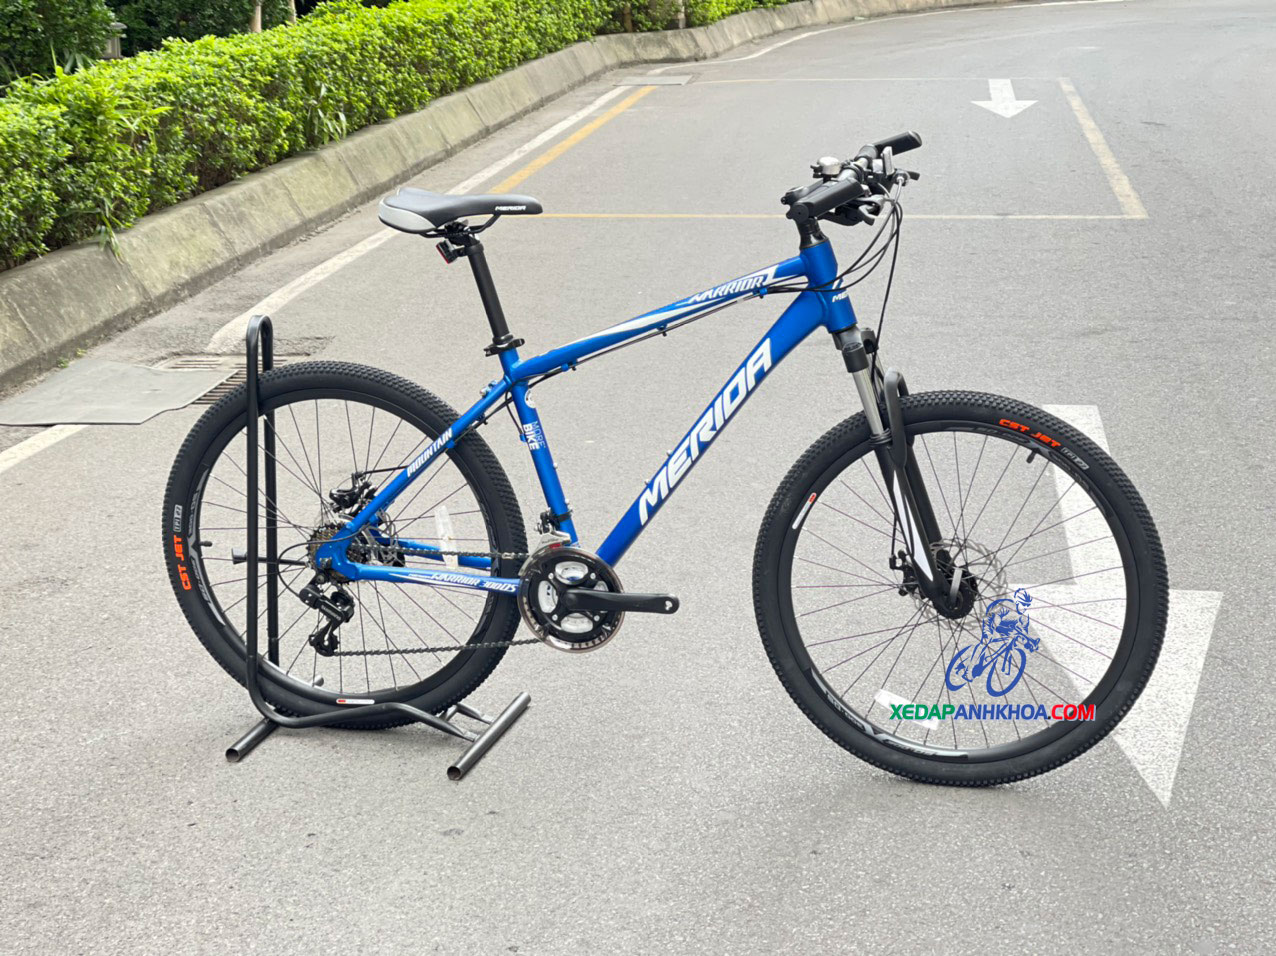 Foxter cross 270 Giá 3750000 vnđ  Shop xe đạp Quang Anh  Facebook